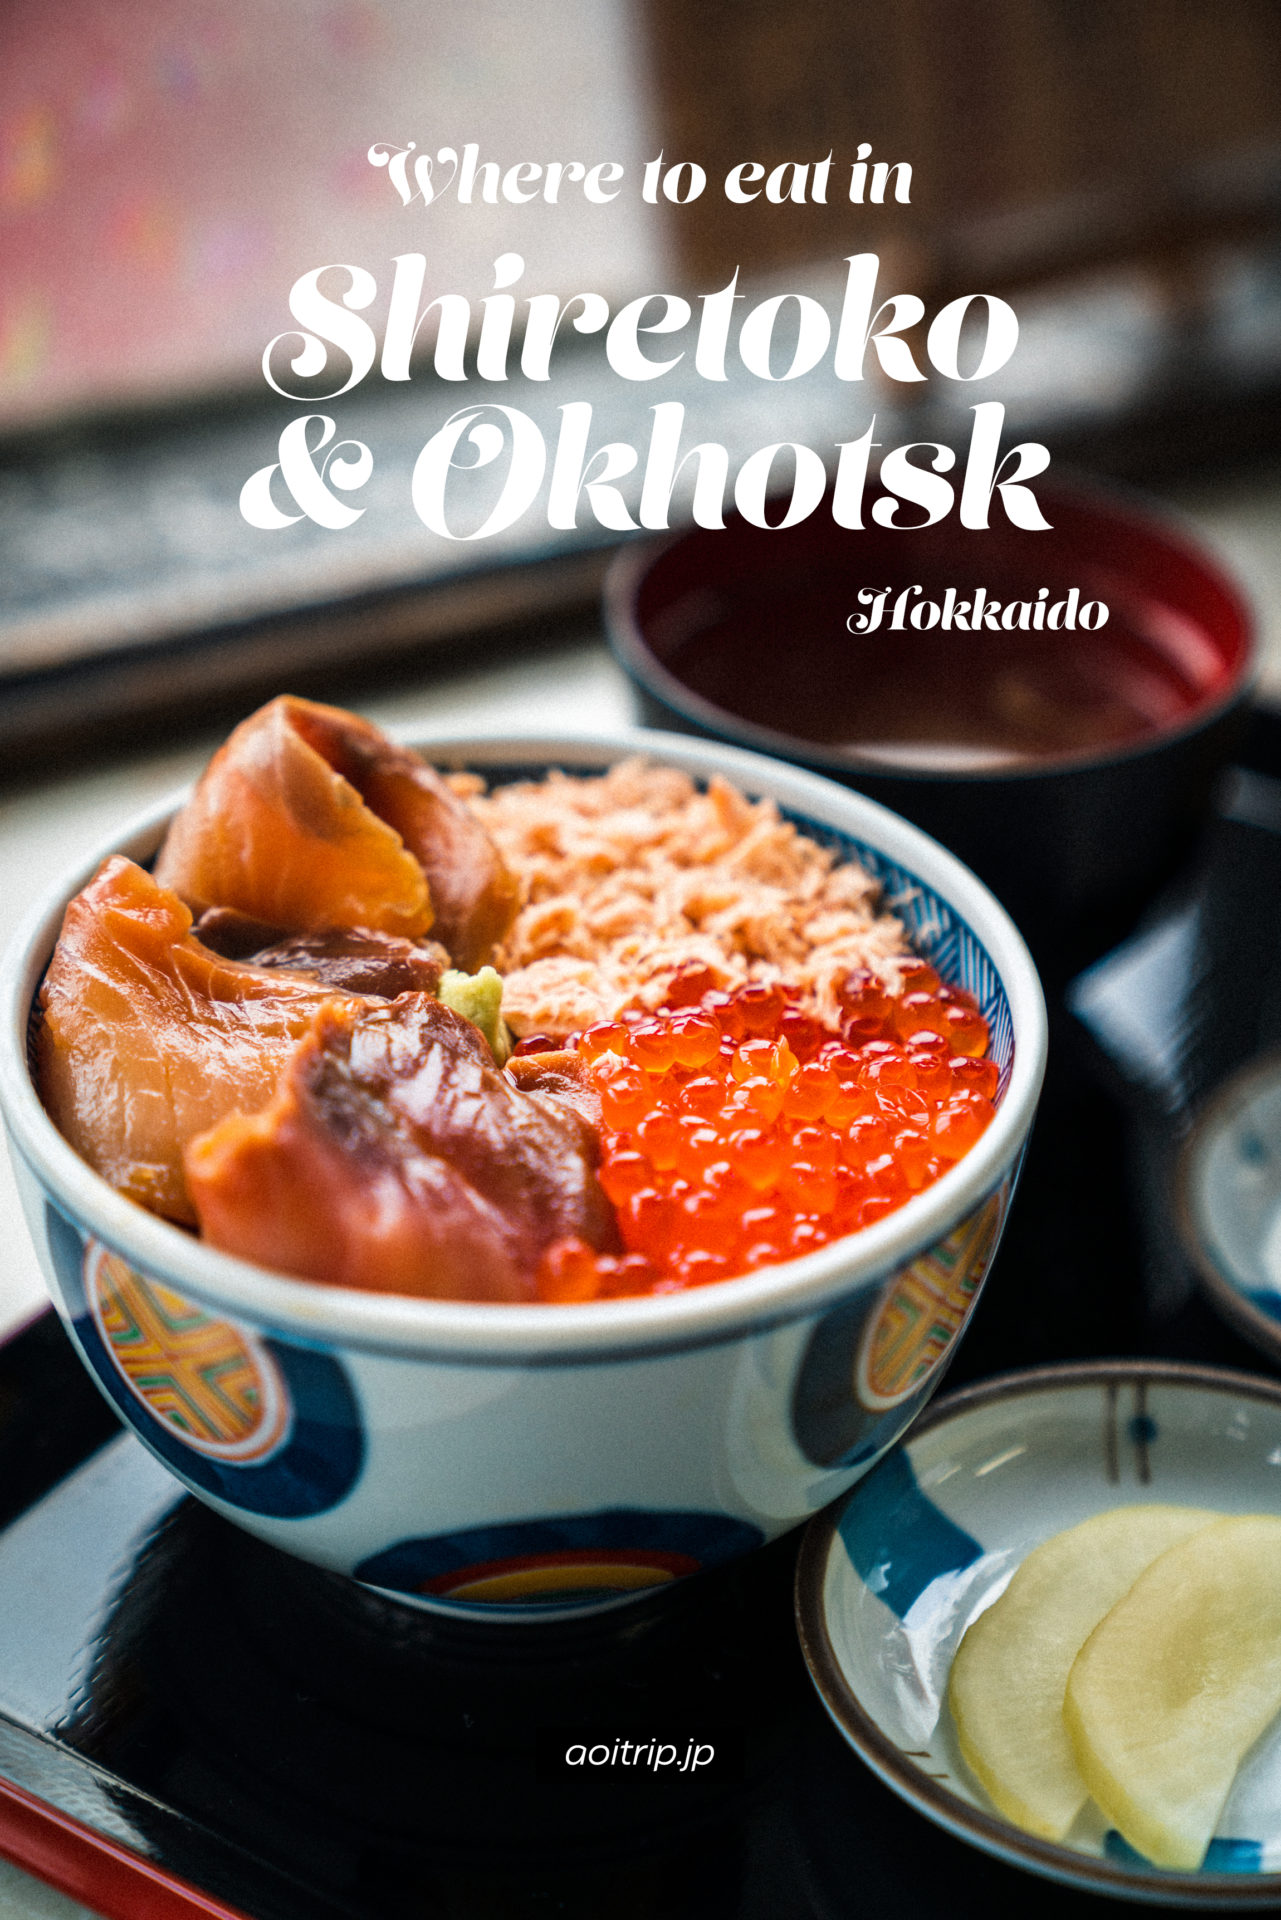 北海道 知床・オホーツク旅行で食べた美味しいグルメ Where to eat in Shiretoko & Okhotsk, Hokkaido